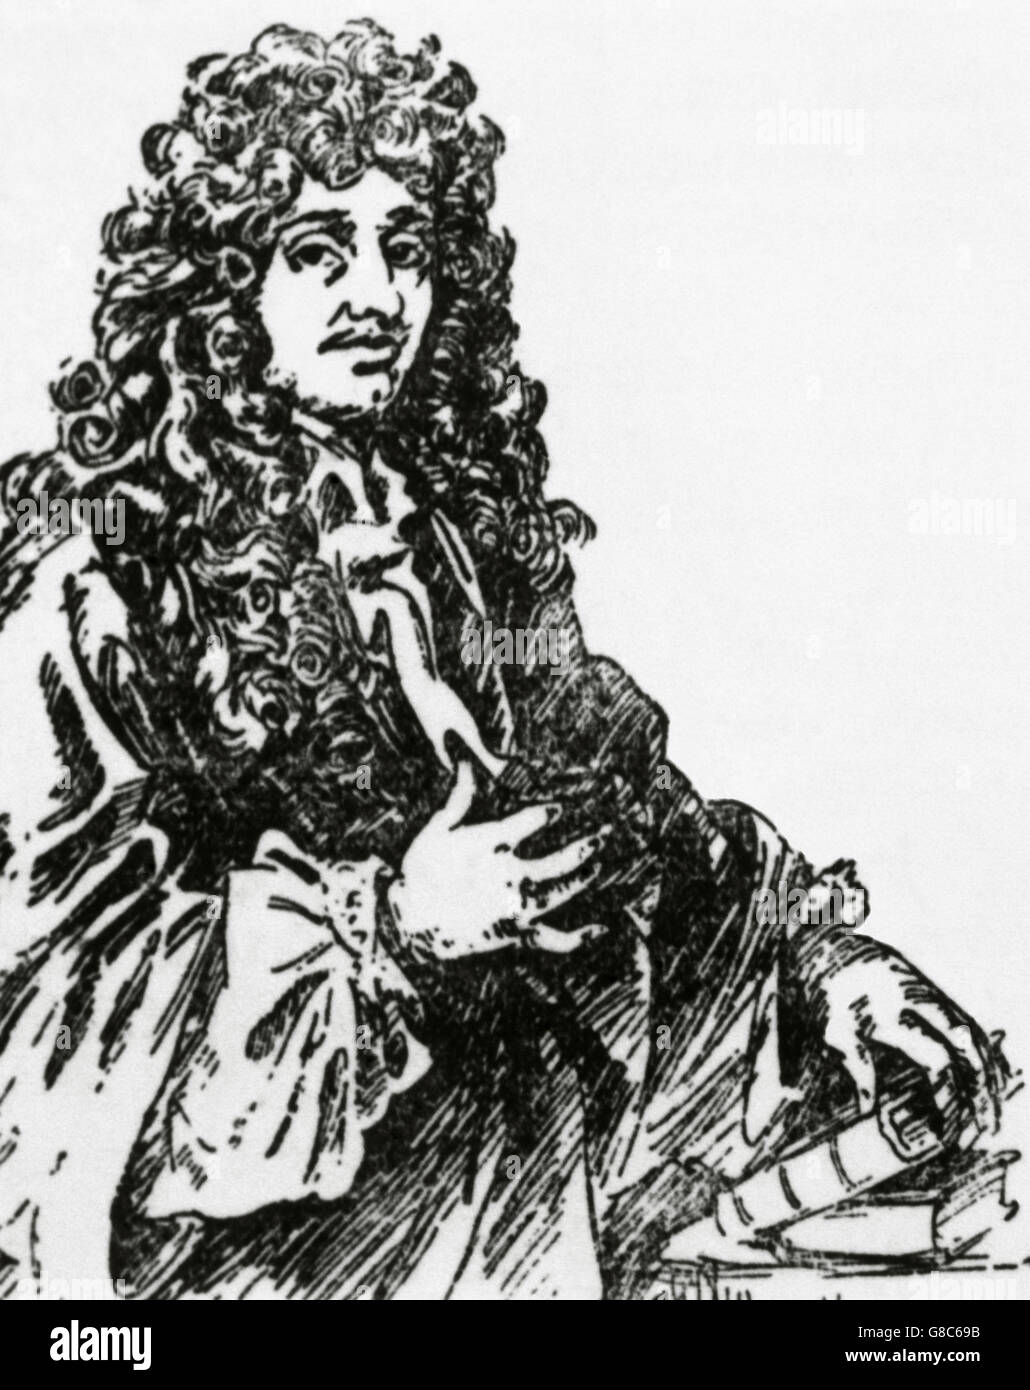 Christiaan Huygens (1629-1695). Dutch matematico e scienziato. Egli è conosciuto soprattutto come un astronomo, fisico e probabilist horologist. Ritratto. Incisione. Foto Stock